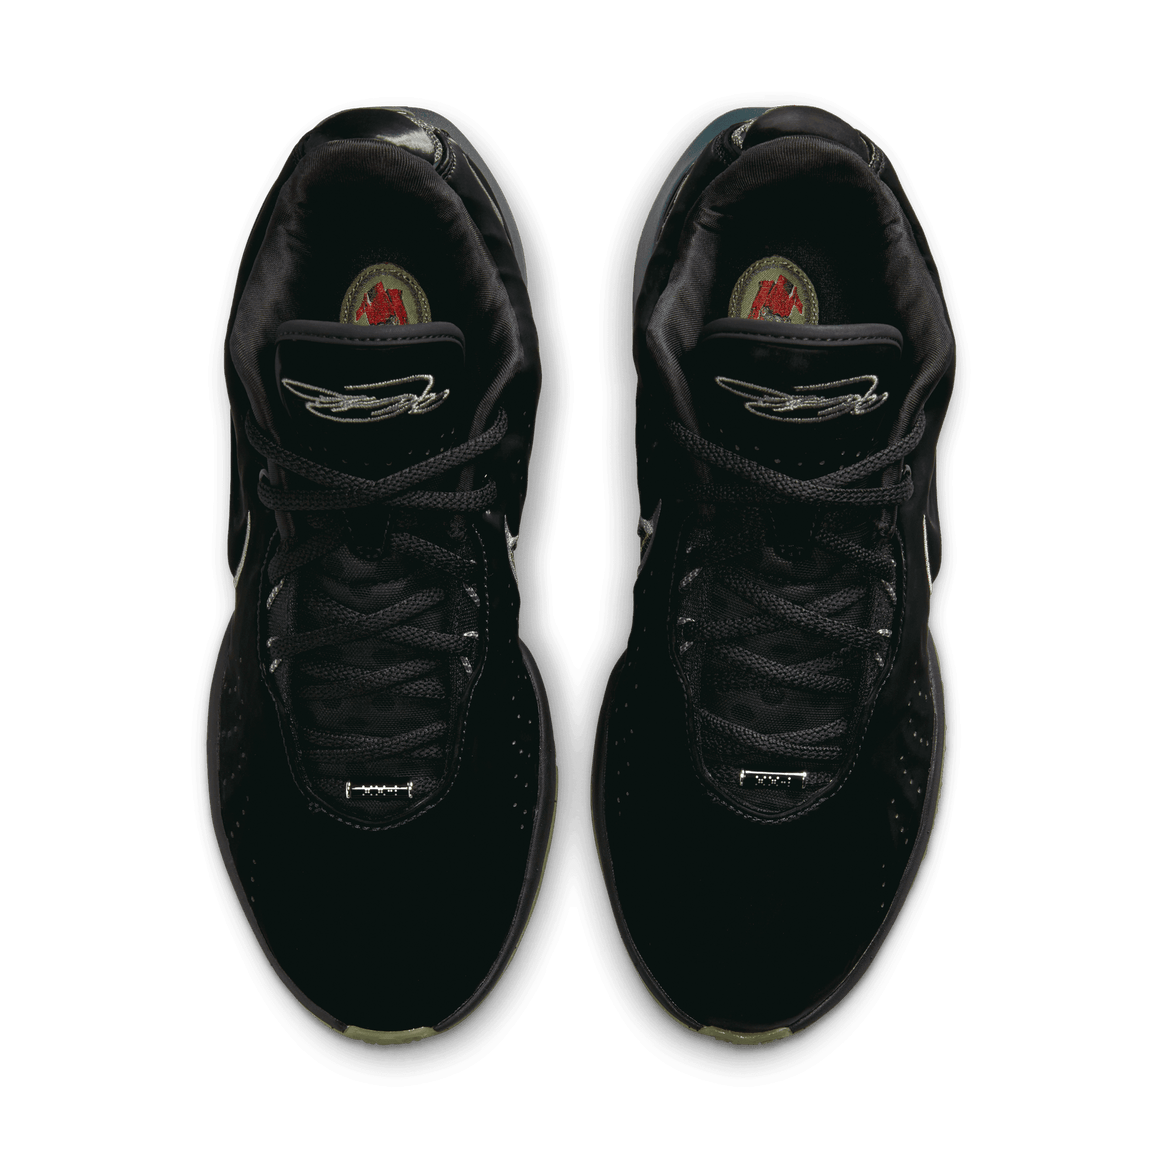 Nike Lebron XXI (Black/MTLC Pewter-Iron Grey-Oil Green) - Nike Lebron XXI (Black/MTLC Pewter-Iron Grey-Oil Green) - 